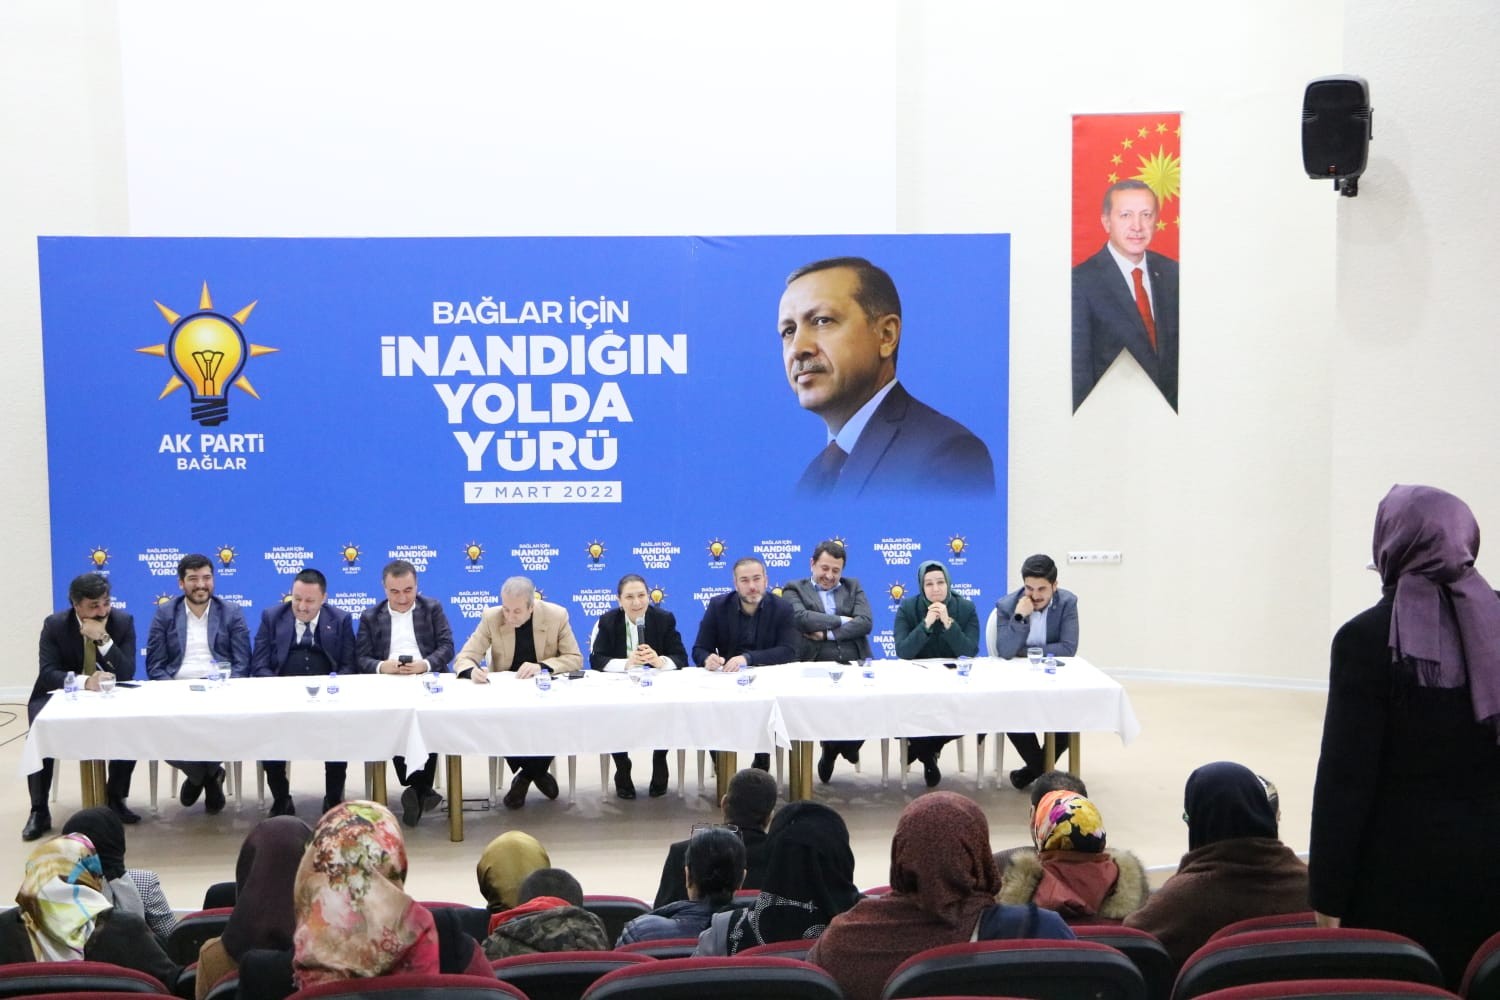 AK Parti Diyarbakır İl Başkanlığı’nın ‘Vefa Buluşmaları’ Bağlar ile devam etti #diyarbakir